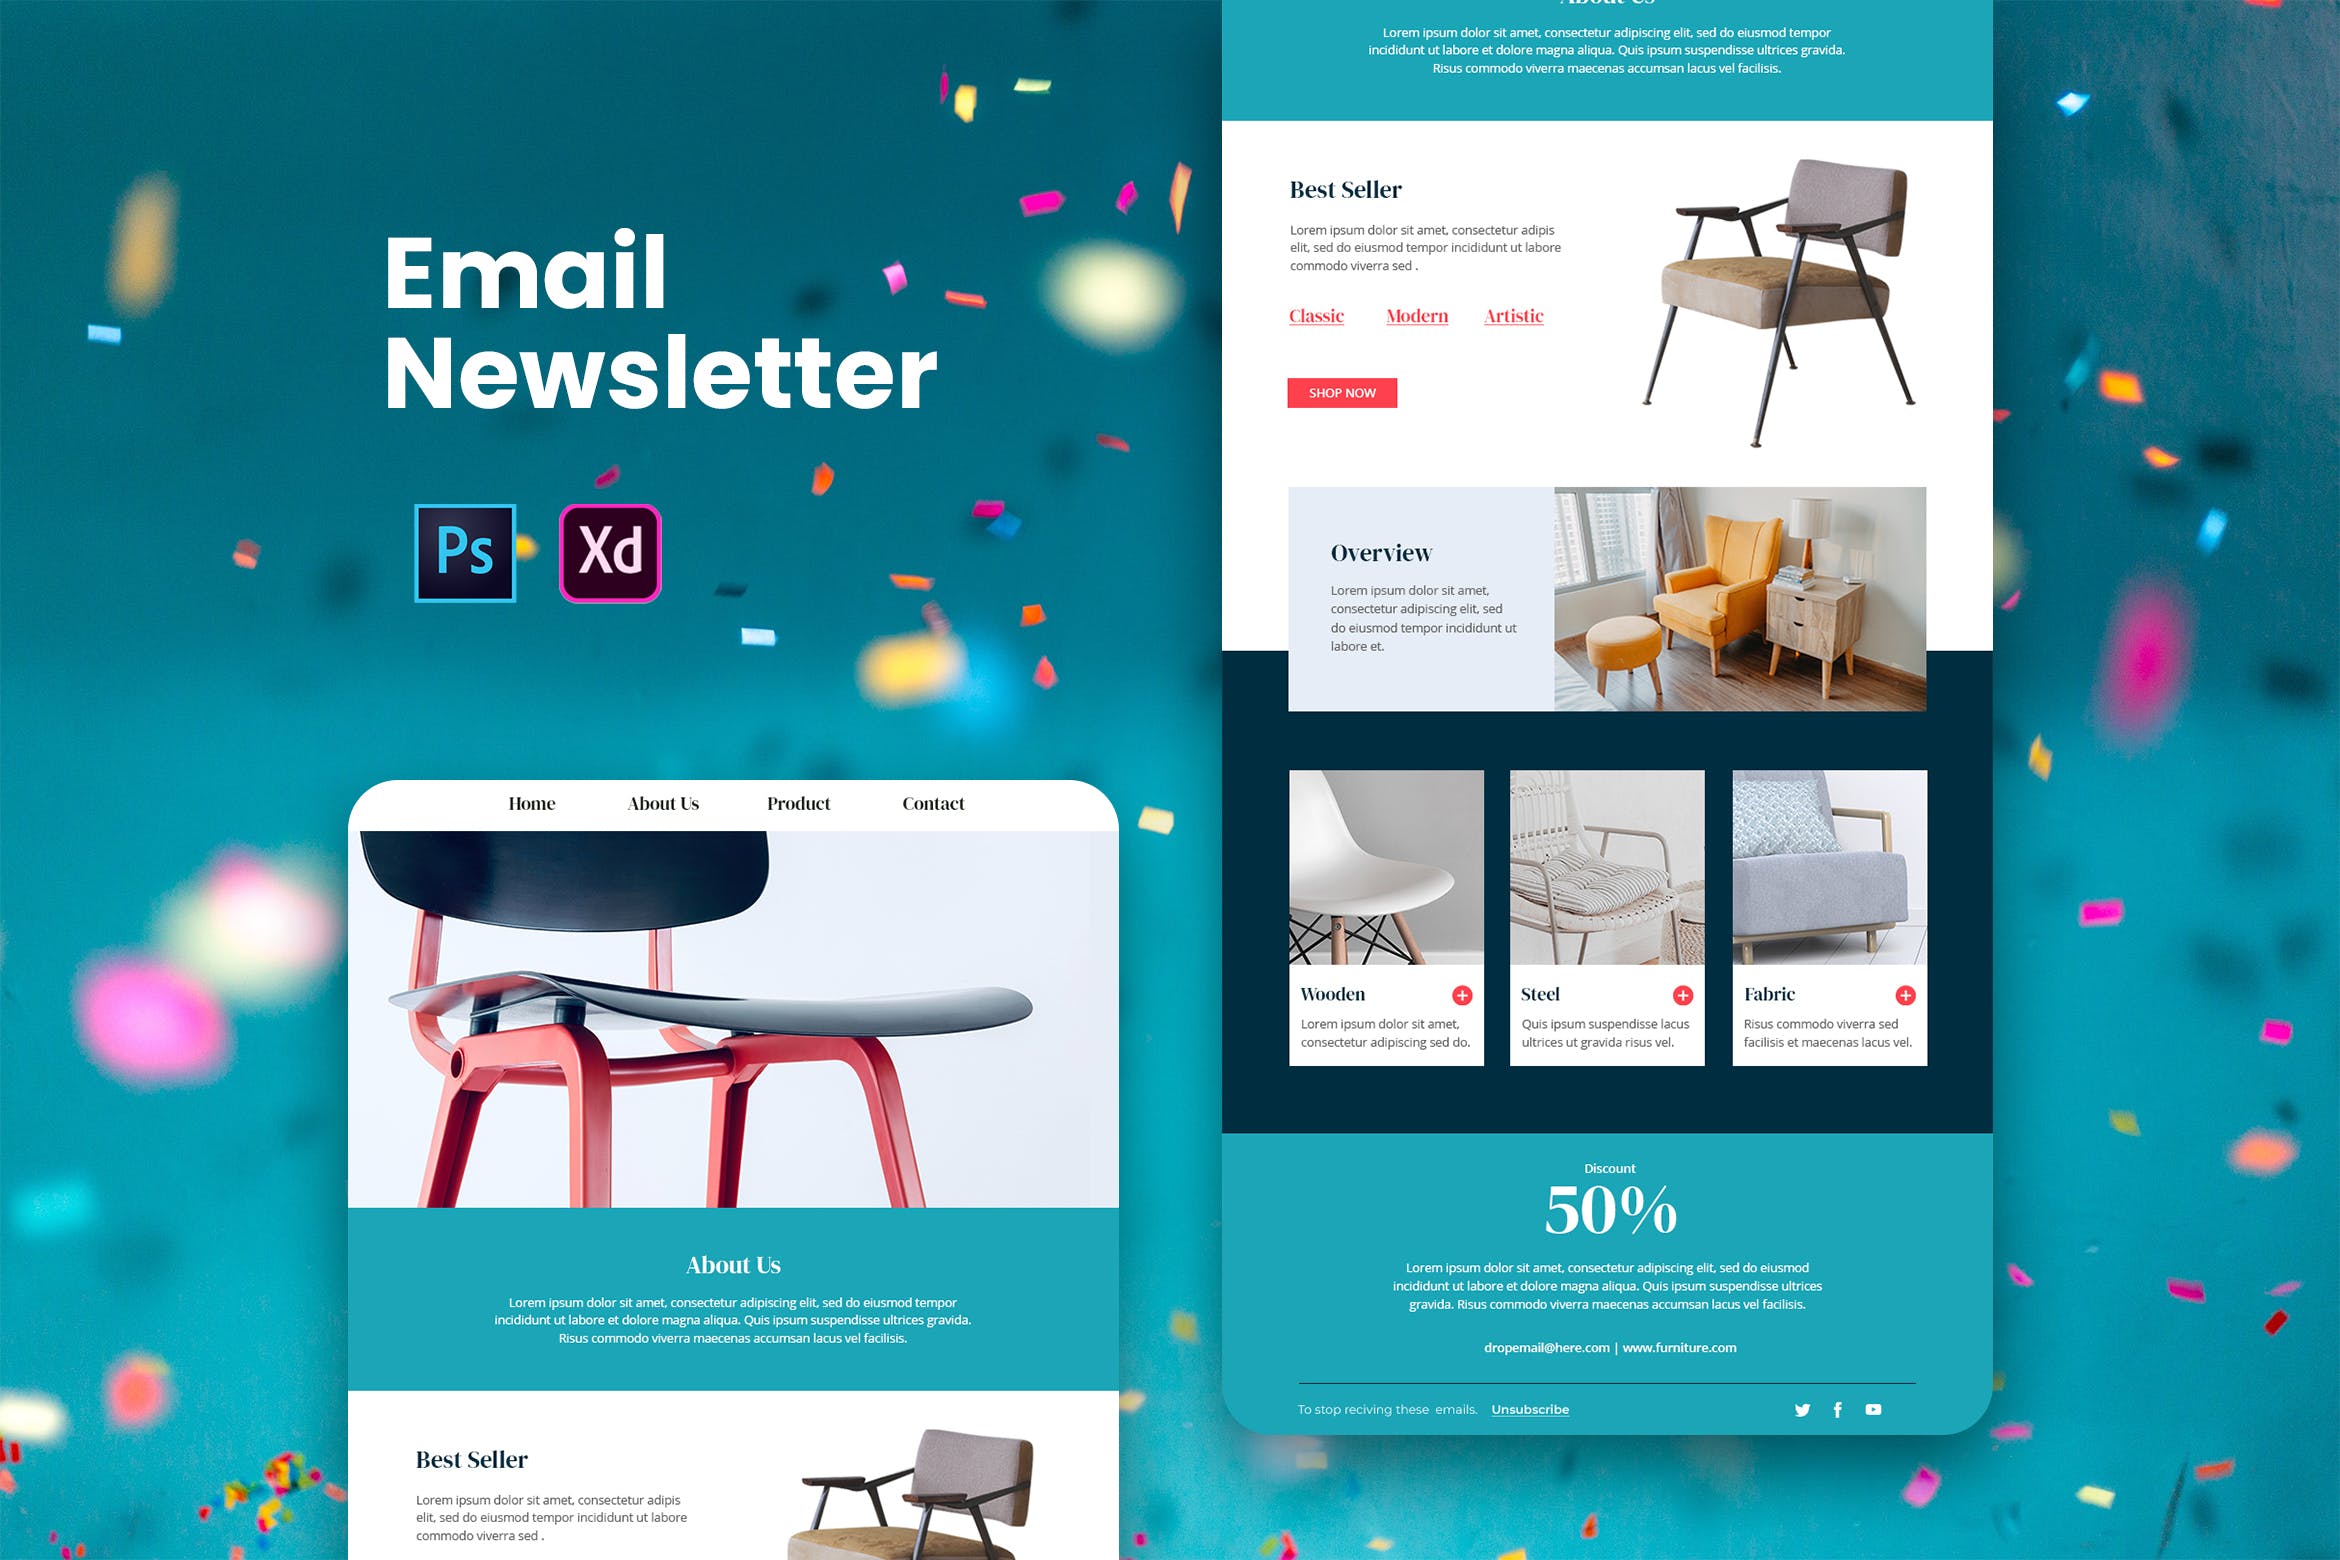 家具品牌推广EDM邮件模板第一素材精选 Furniture Email Newsletter插图